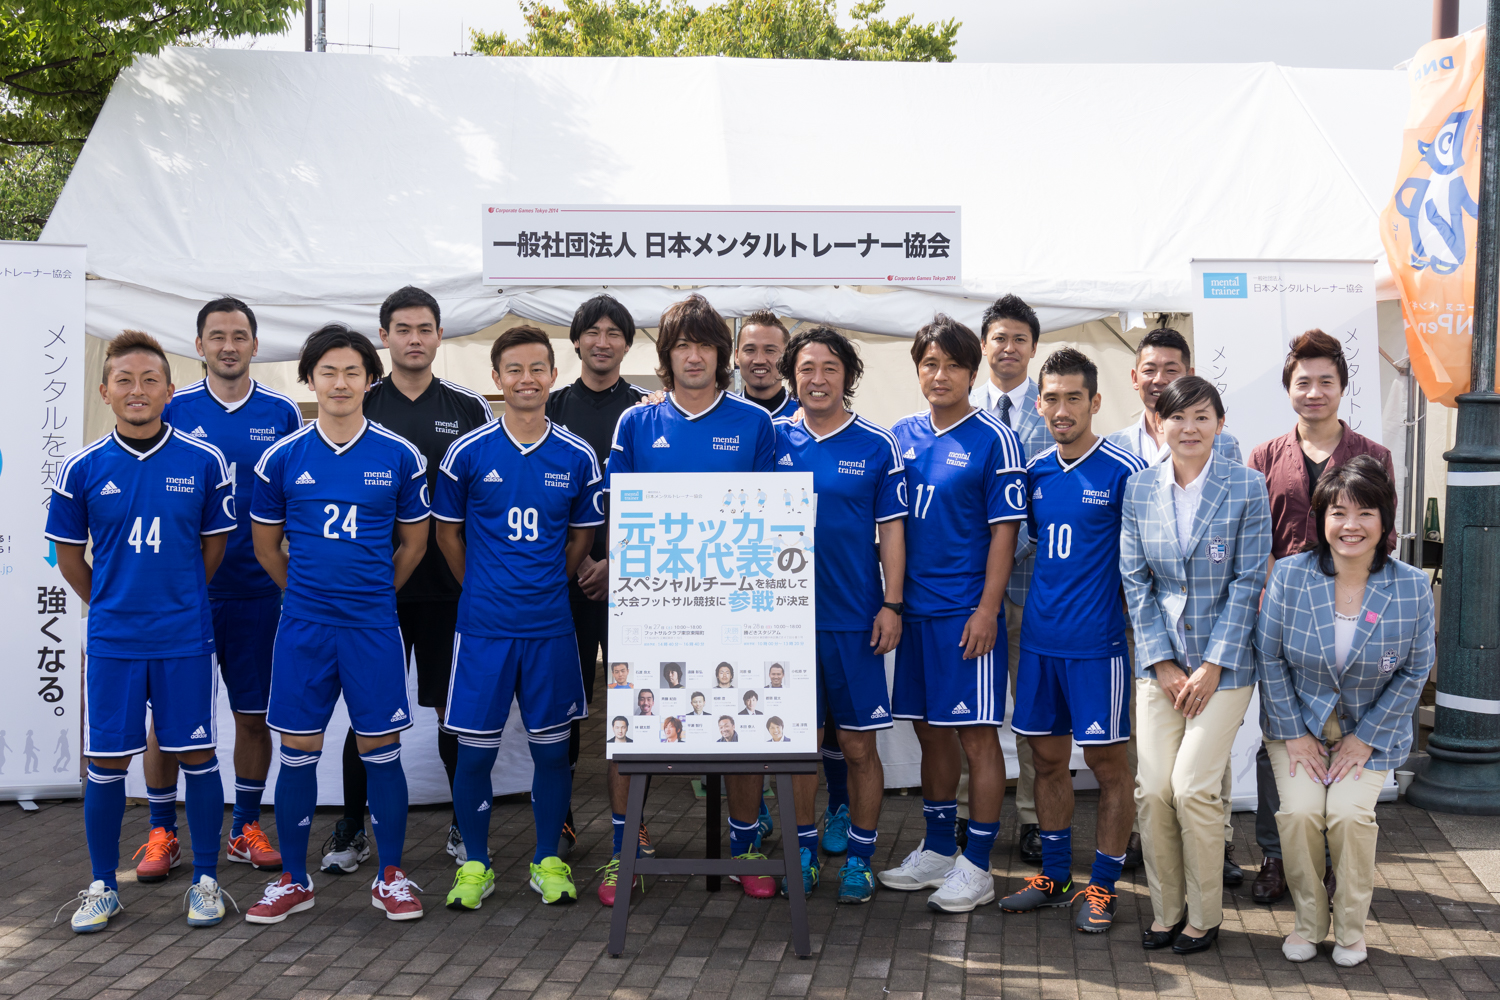 イベントリポート ザ コーポレートゲームズ東京14で 元サッカー日本代表のスペシャルチームを結成し 大会フットサル競技で第3位 一般社団法人 日本メンタルトレーナー協会のプレスリリース